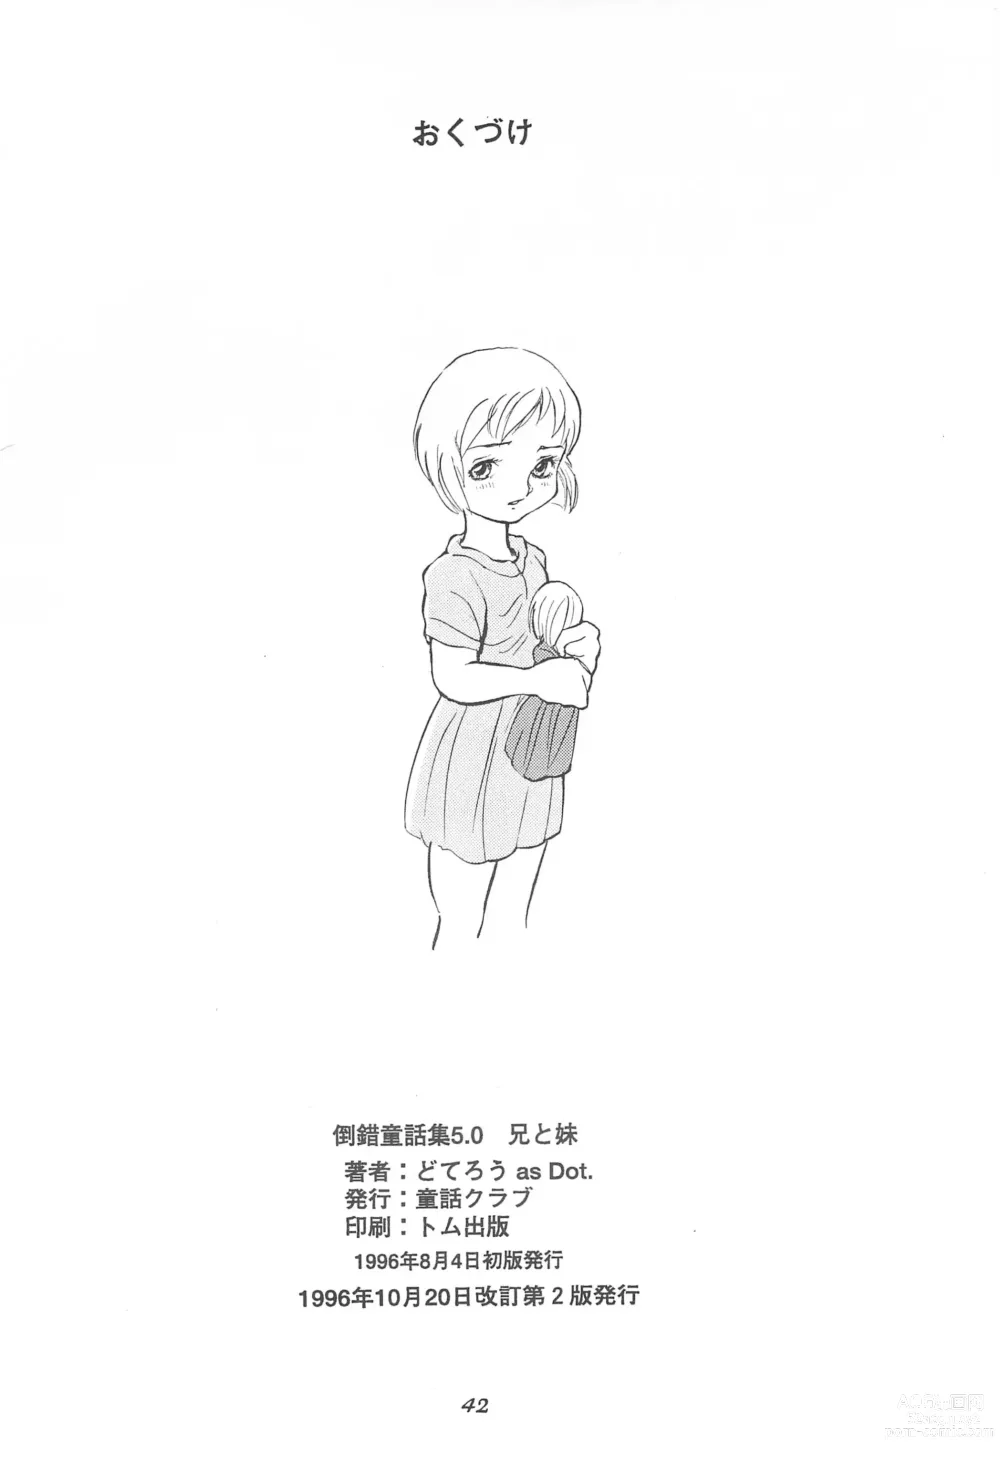 Page 44 of doujinshi Tousaku Douwa-shuu 5.0 Ani to Imouto